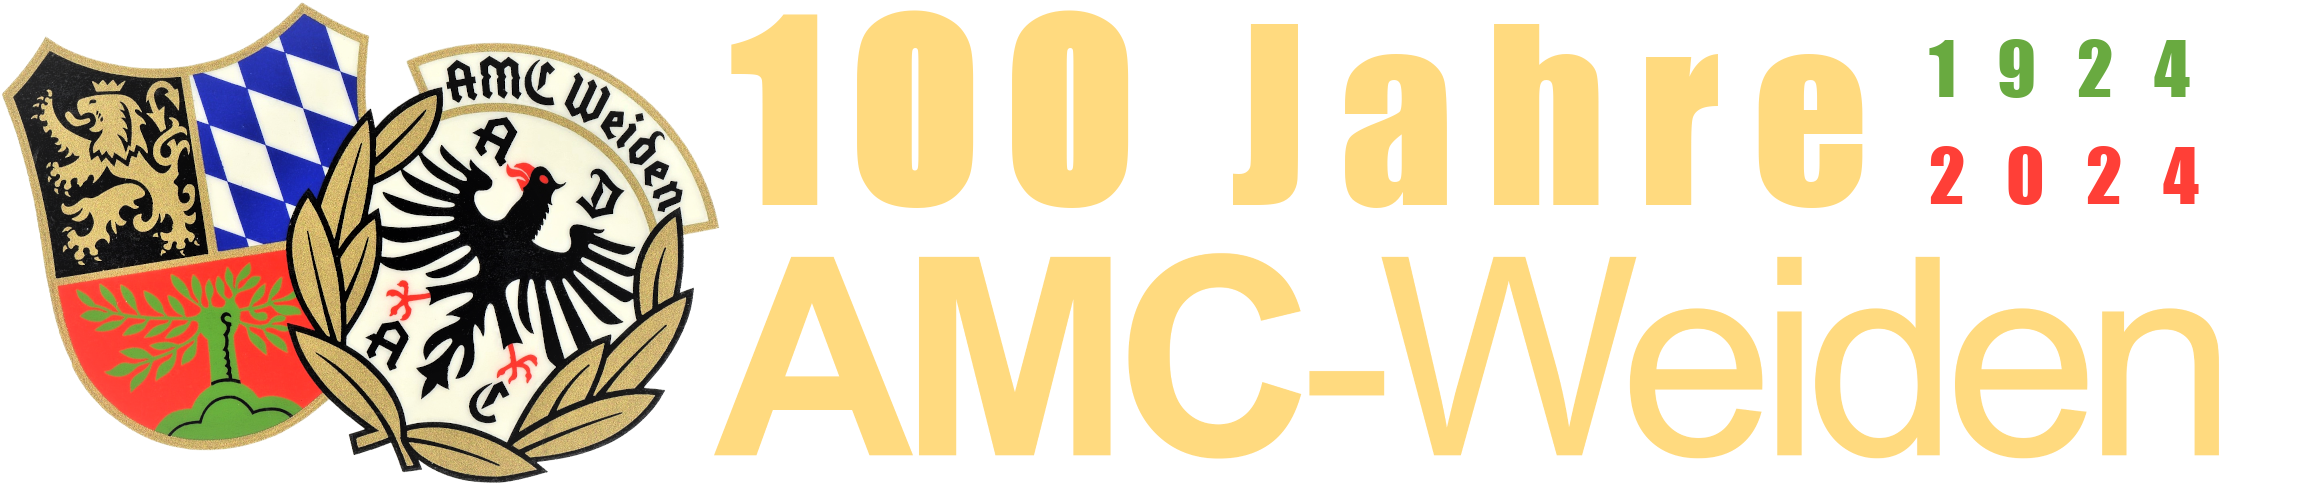 AMC-Weiden